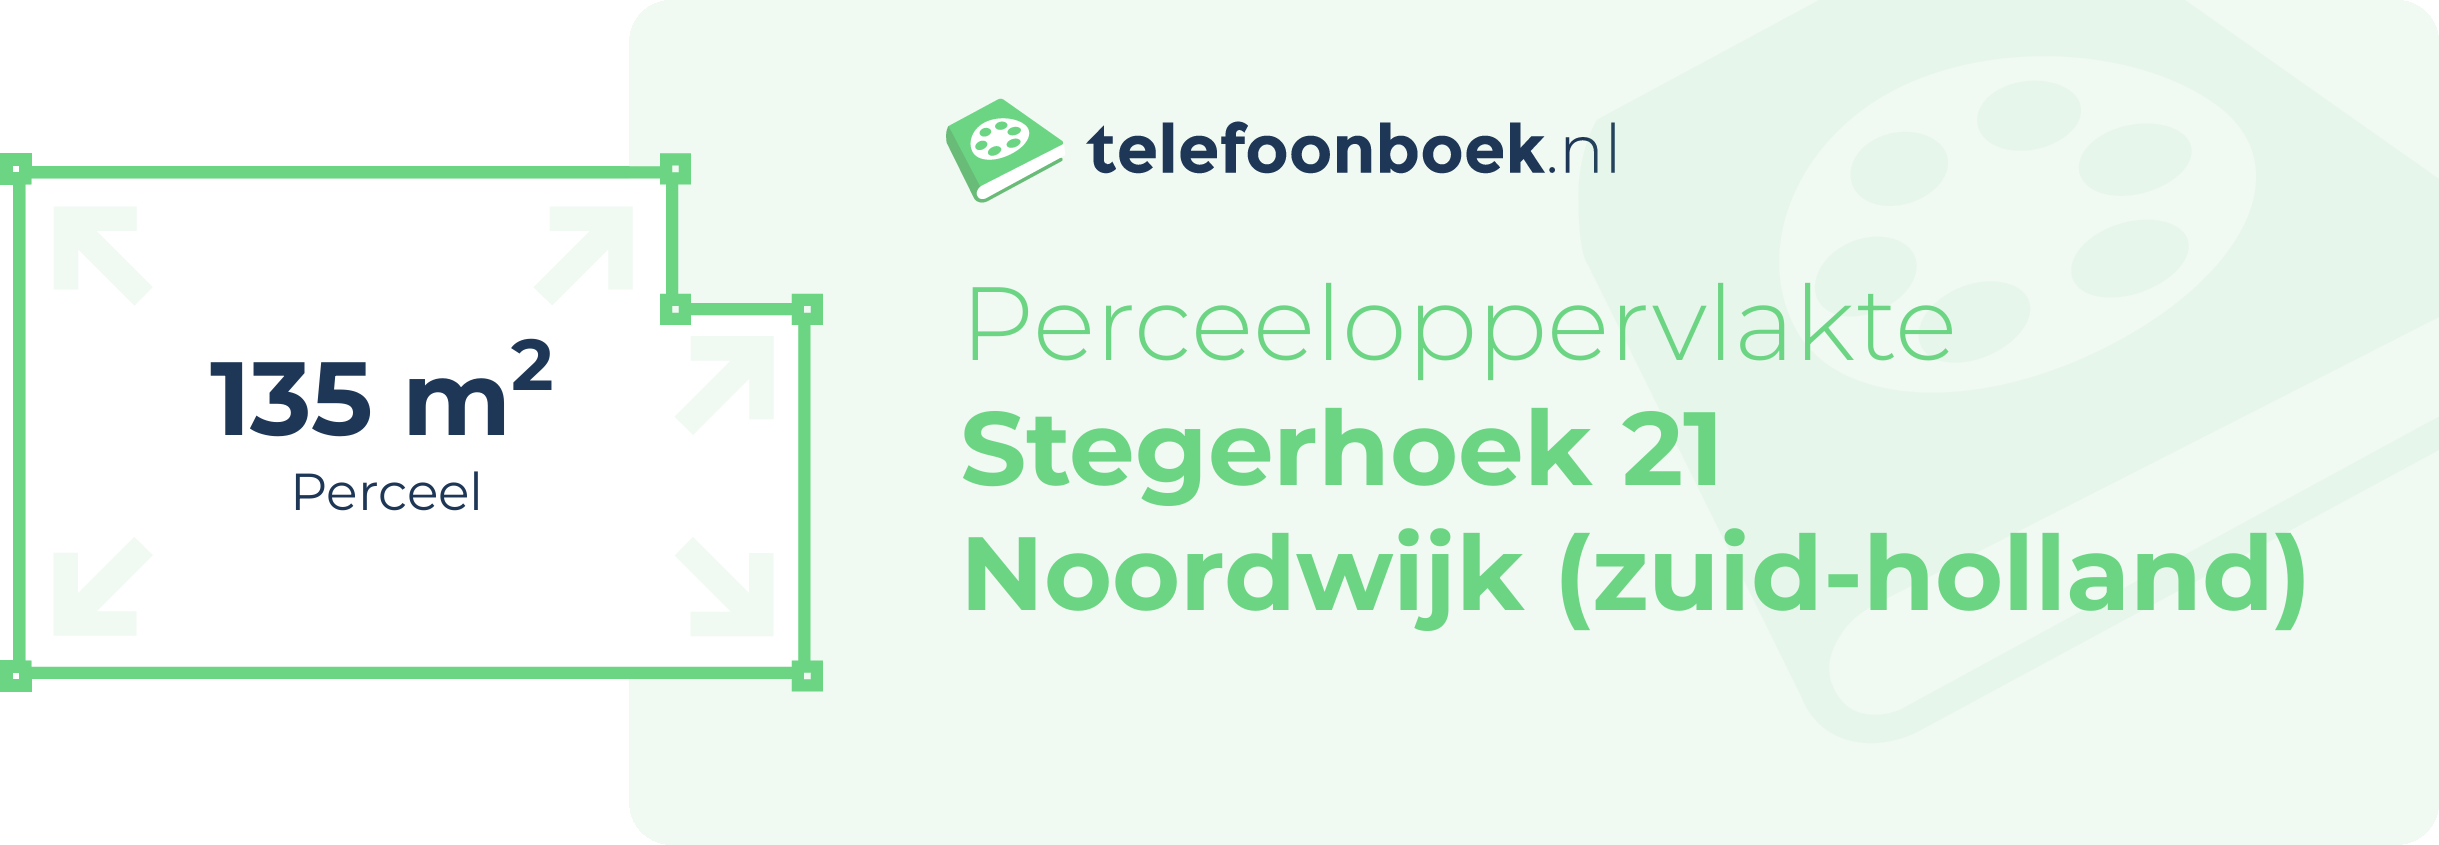 Perceeloppervlakte Stegerhoek 21 Noordwijk (Zuid-Holland)